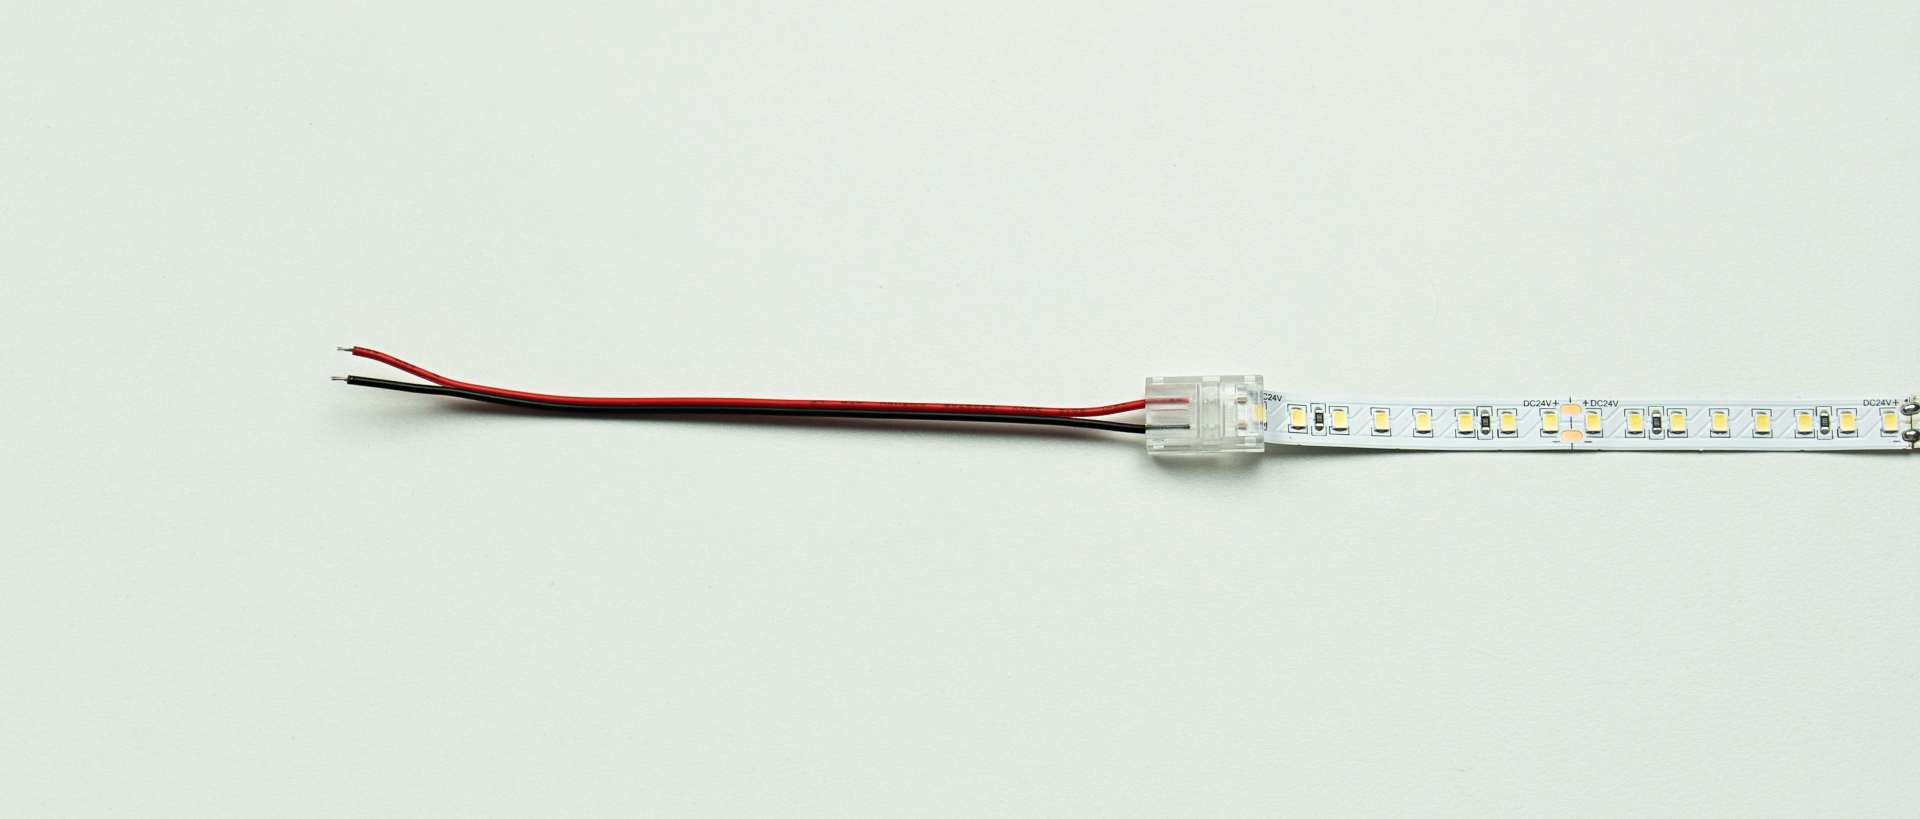 Schemat połącznia taśmy LED i przewodu przy pomocy złączki jednostronne